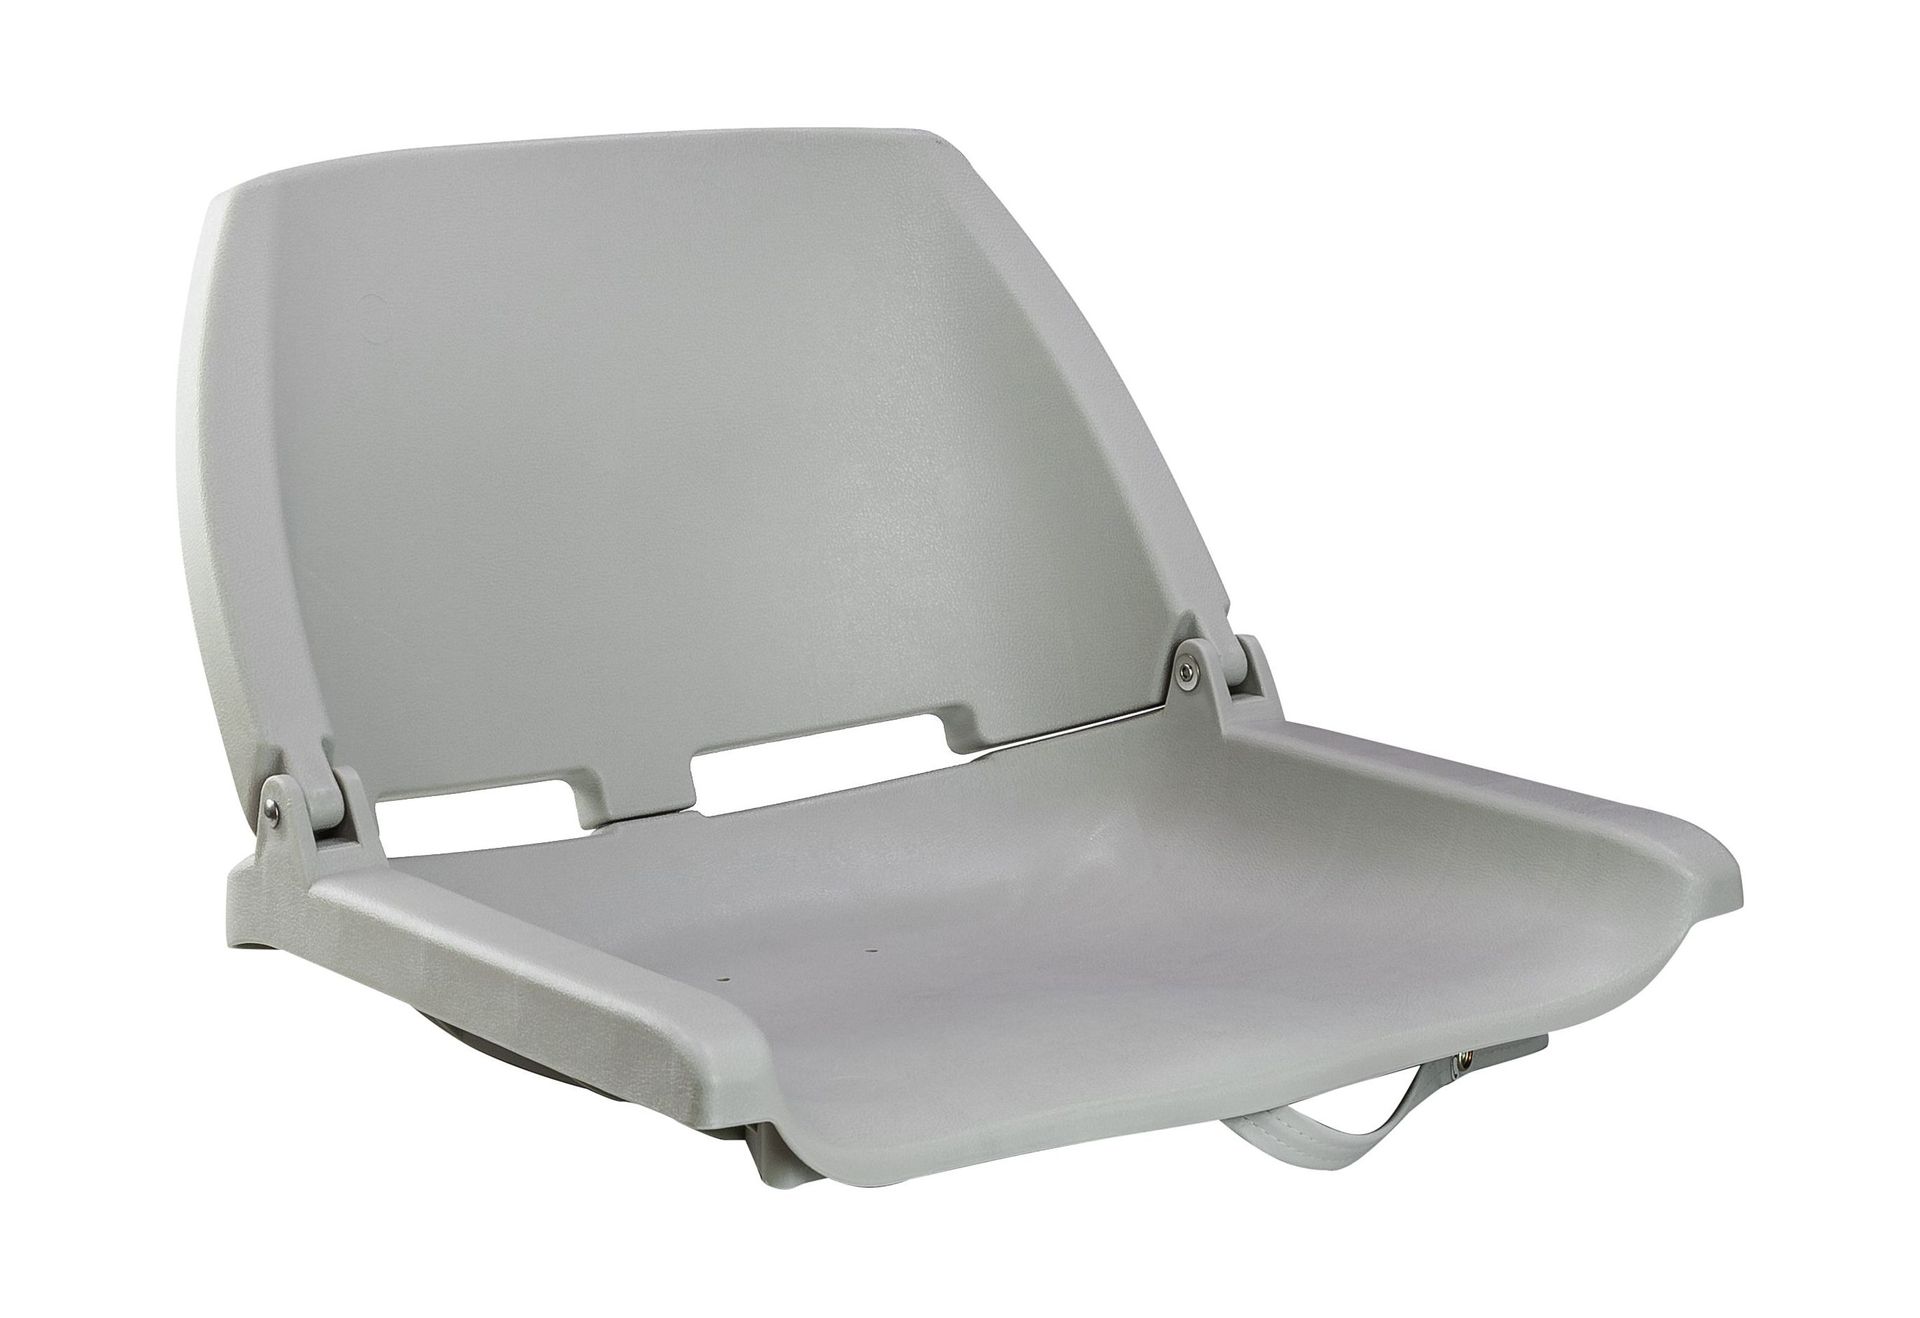 Кресло складное, пластик, цвет серый, Marine Rocket 75110G-MR кресло мягкое складное камуфляж камыш marine rocket 75109camo99 mr